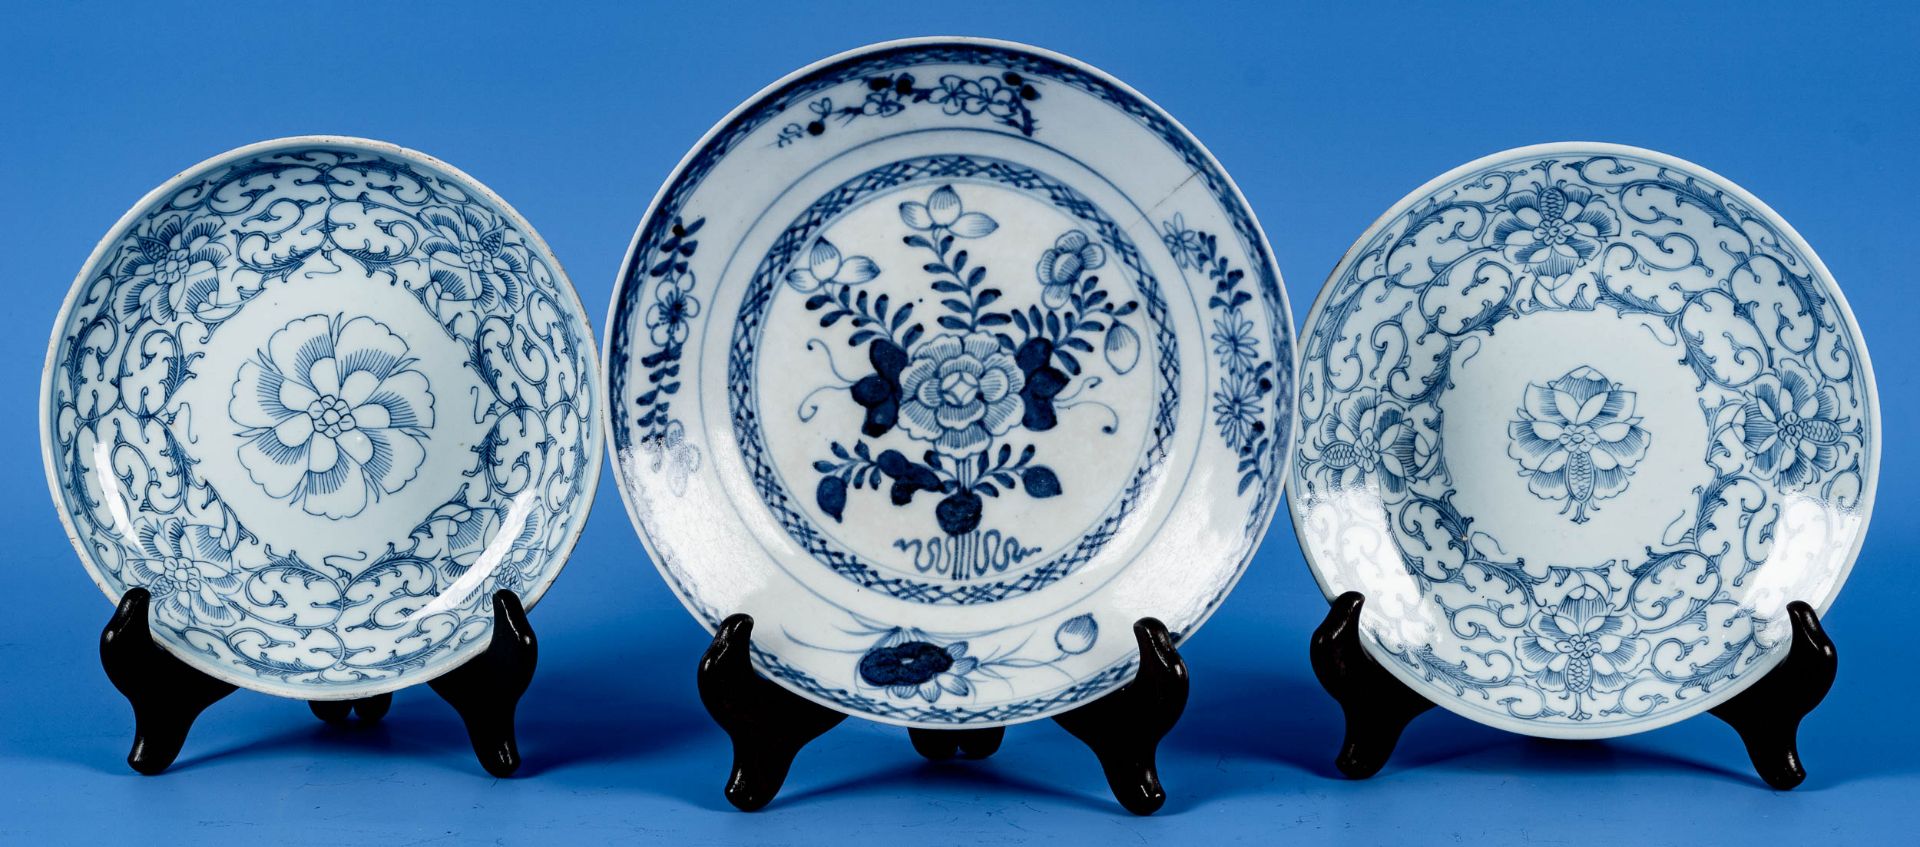 3 teiliges Konvolut verschiedener alter, antiker Porzellanteller, blau-weiß glasiert, verschiedene